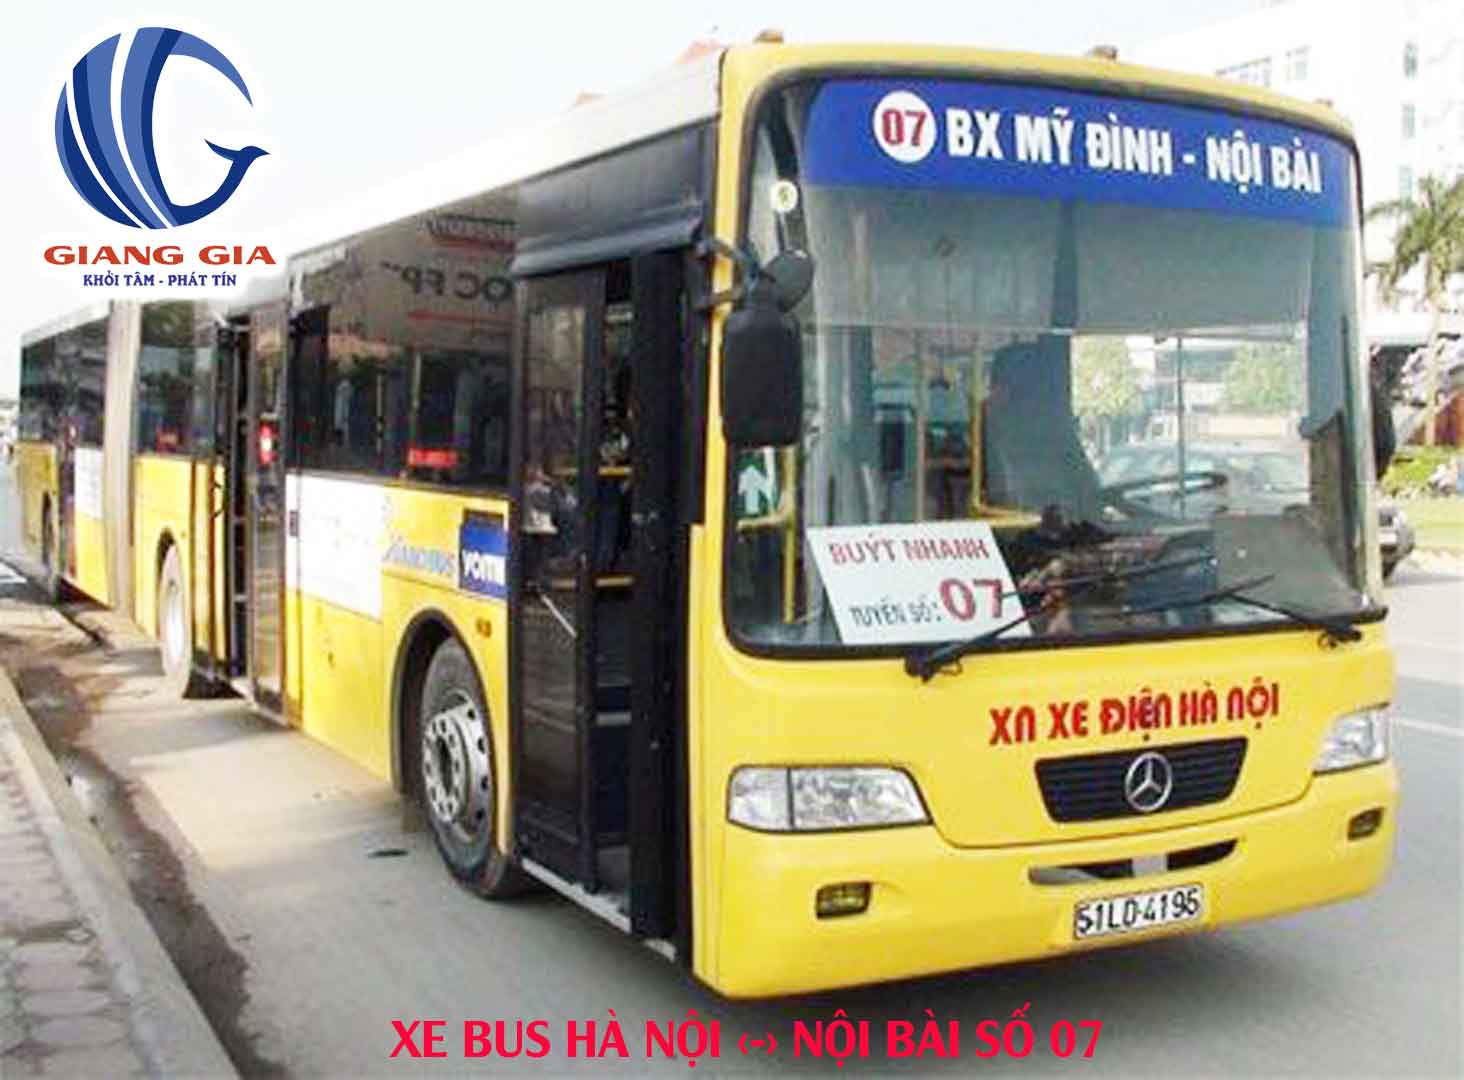 Xe buýt tuyến 07 Cầu Giấy Hà Nội - Nội Bài